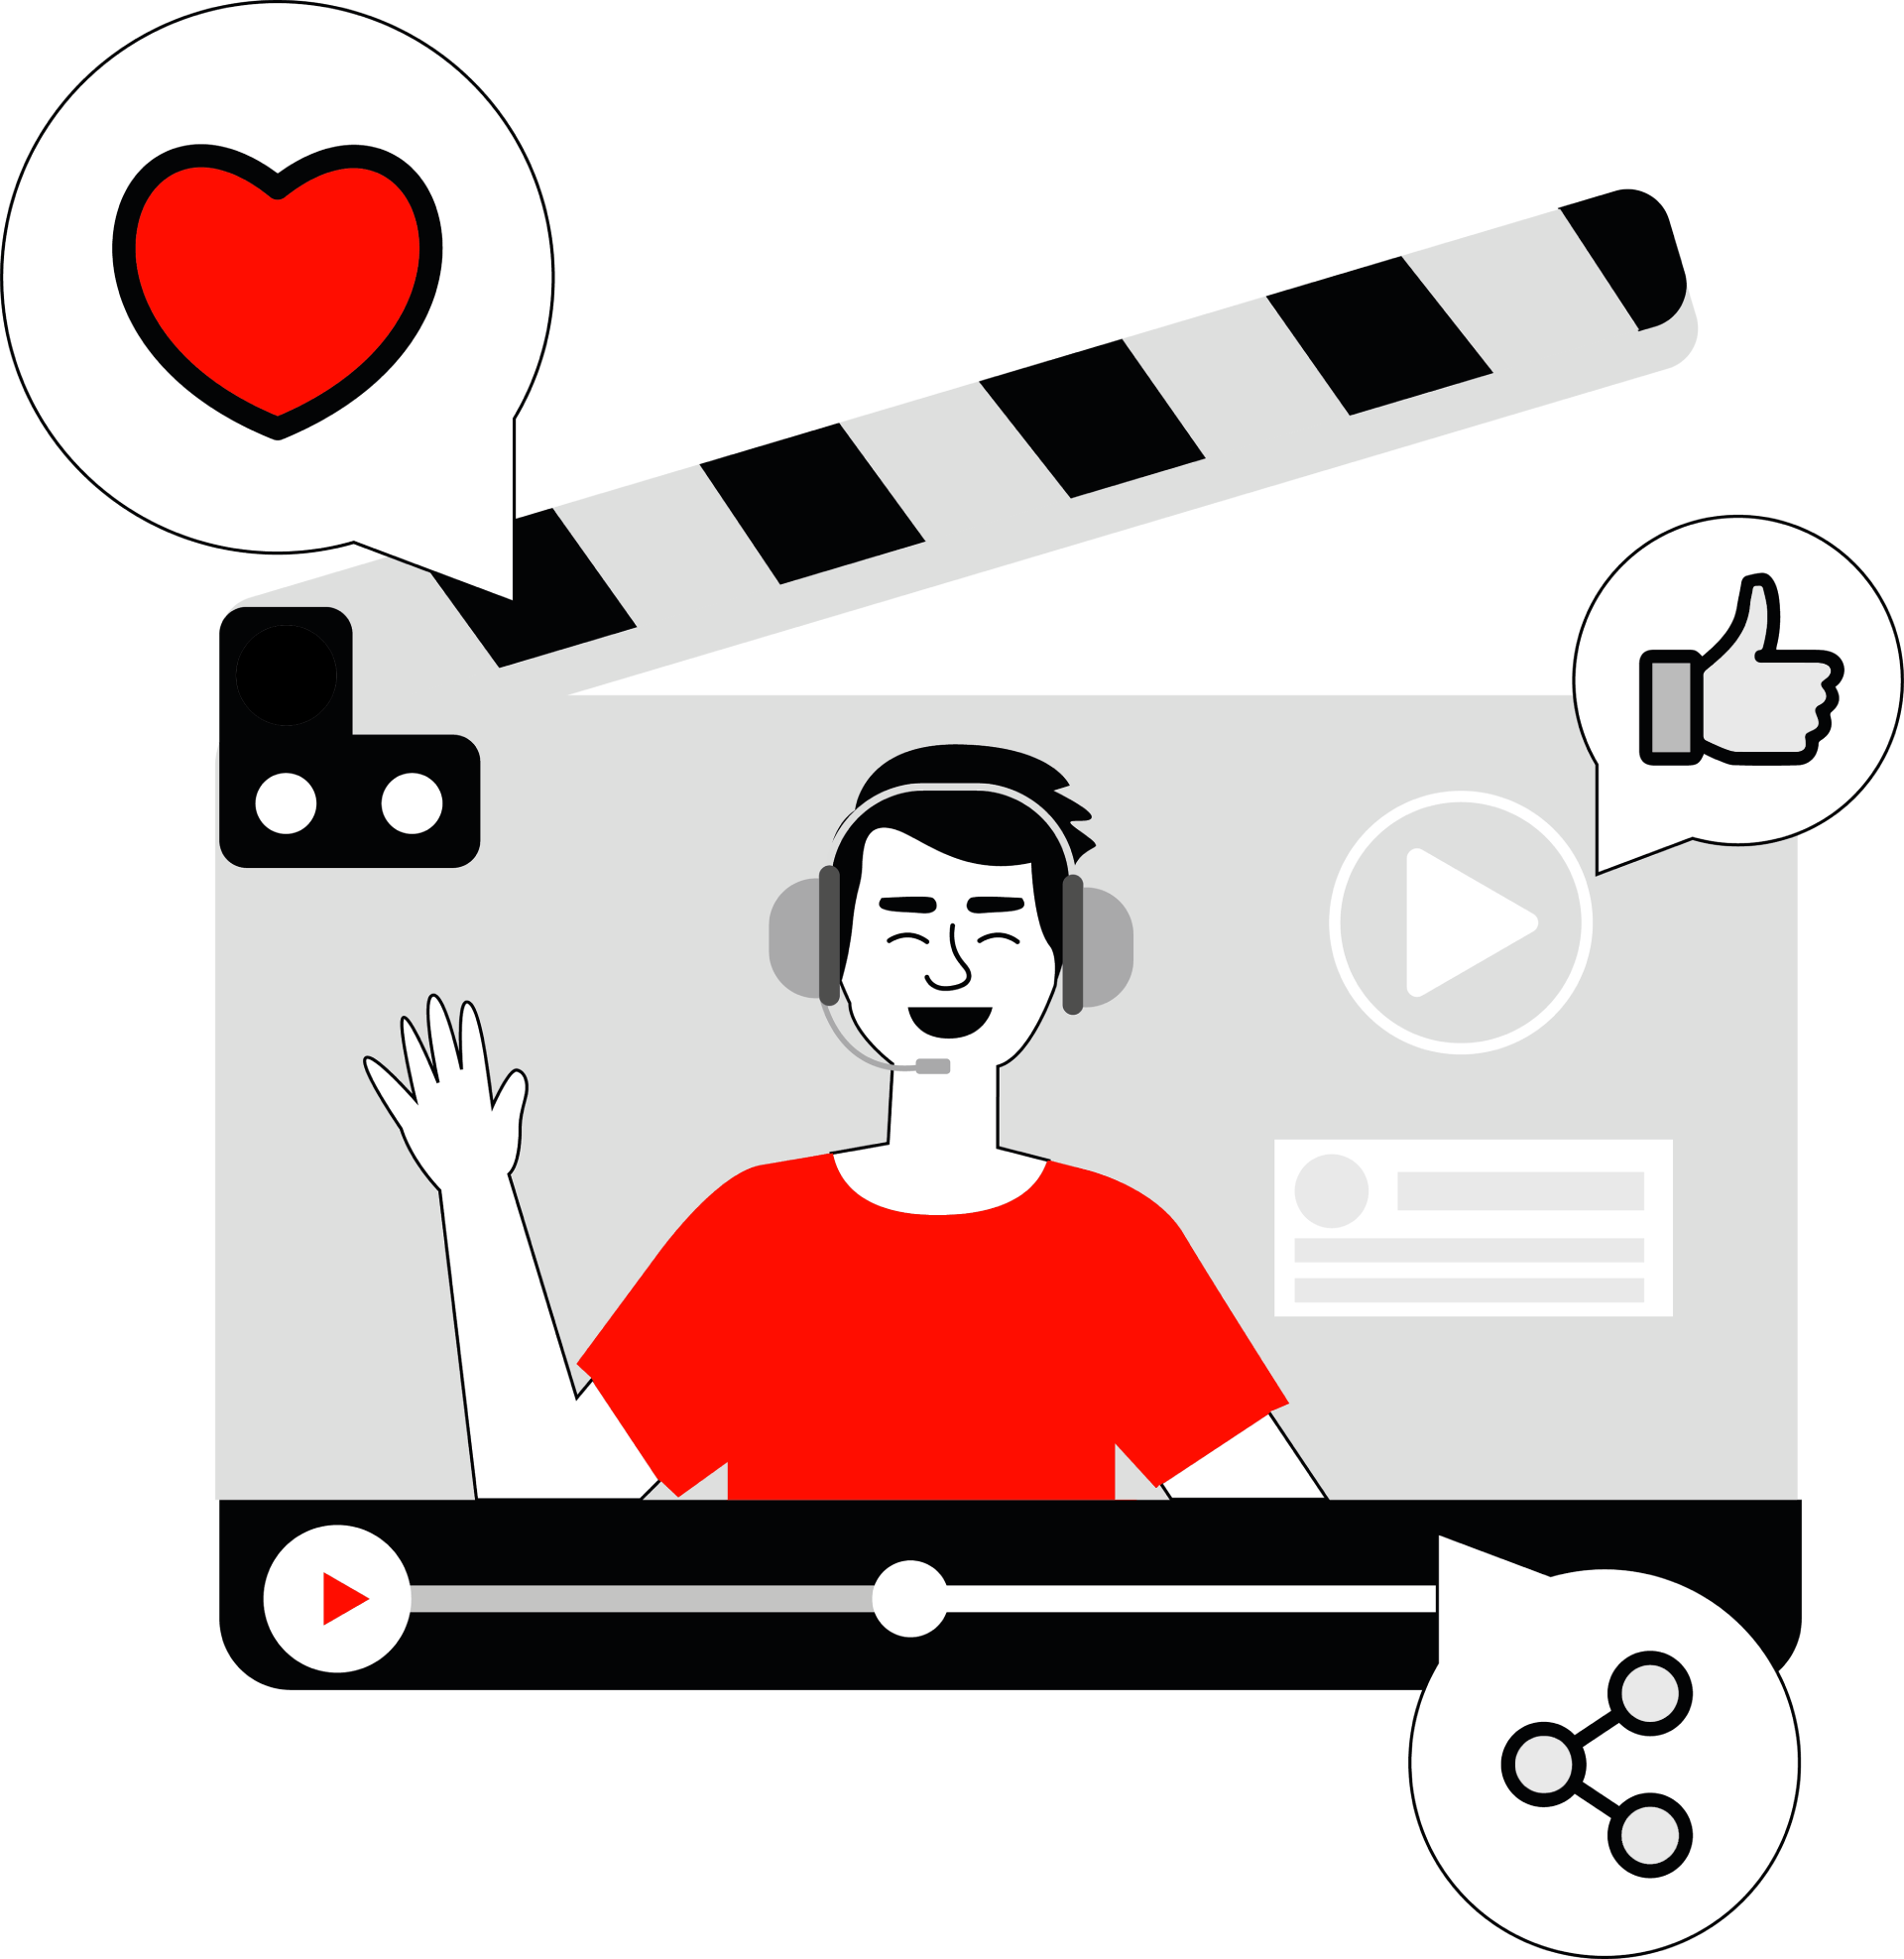 E-Learning durch Videos ermöglicht das Teilen und Liken von Lerninhalten.